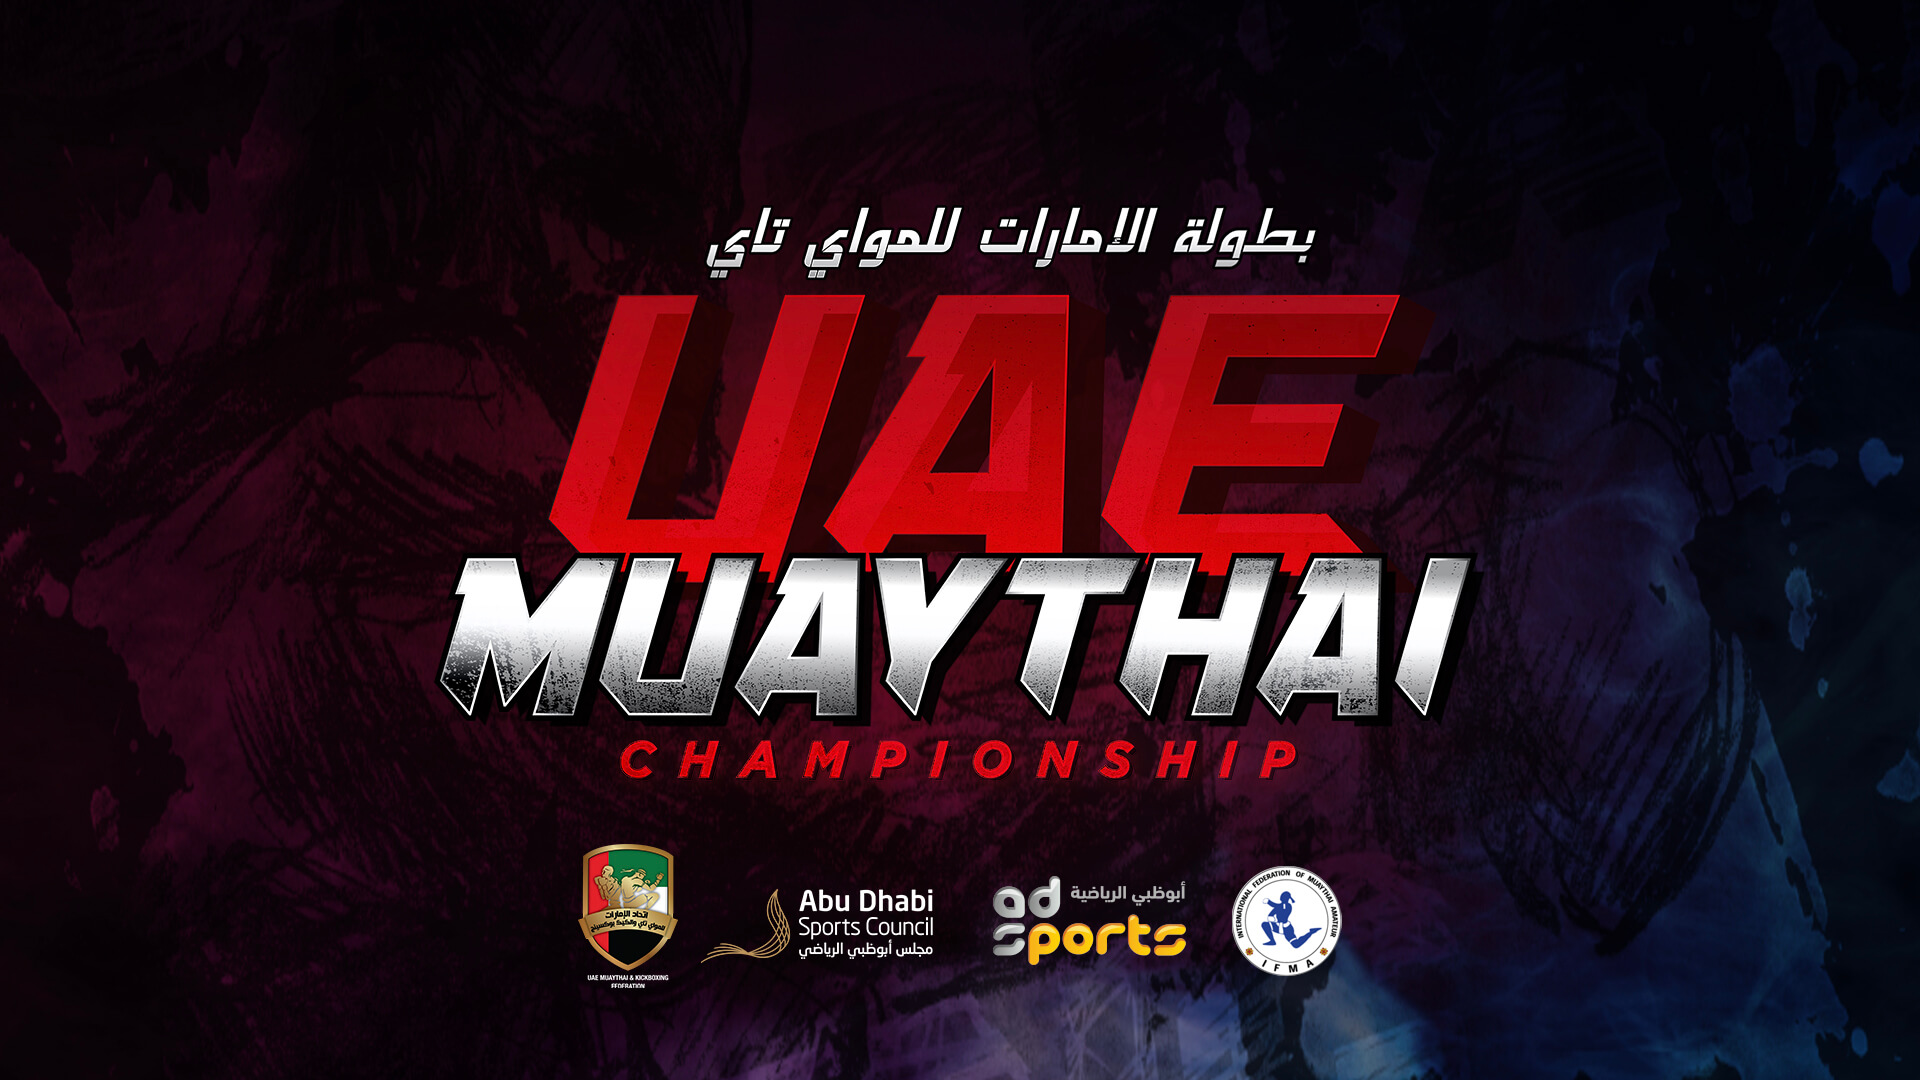 UAE Muay Thai Championship 2019 UAM Events & ORIGINALS